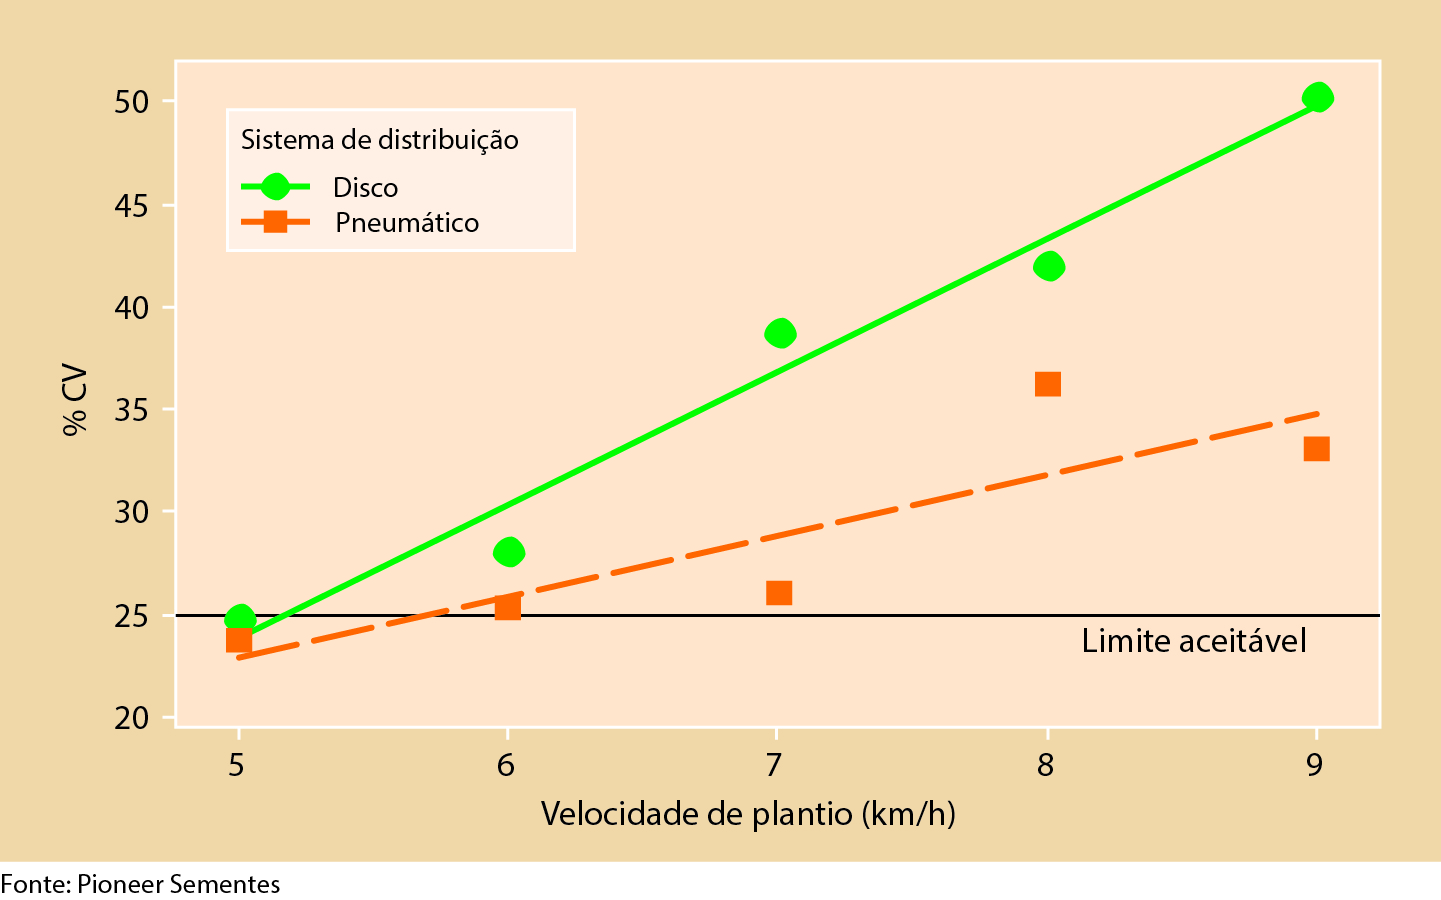 Gráfico 1 - Influência da velocidade sobre a eficiência da distribuição de sementes de dois sistemas dosadores. (Pioneer Sementes, 2010)